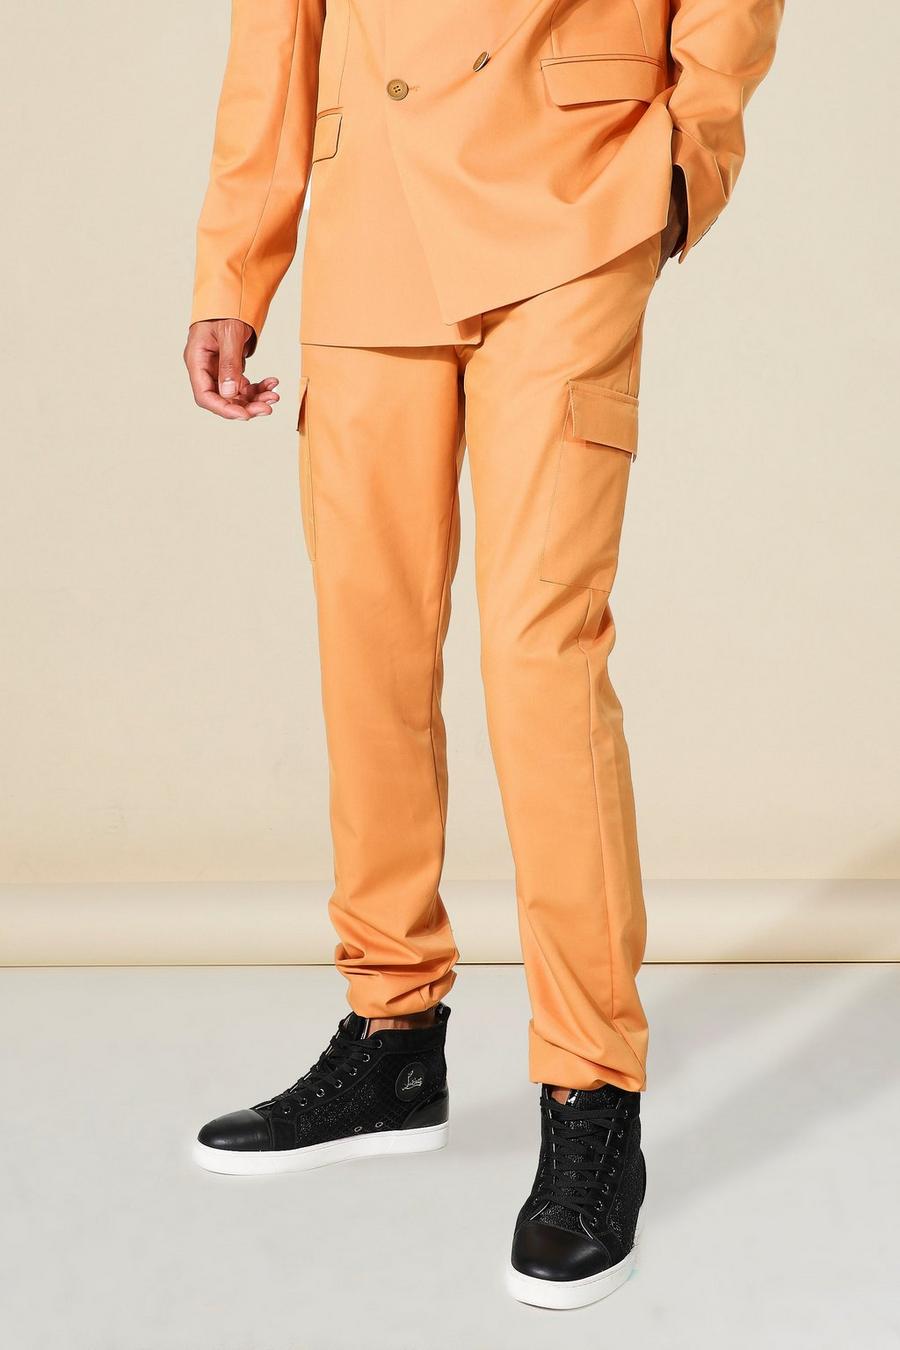 כתום arancio מכנסי חליפה סקיני בסגנון דגמ'ח, לגברים גבוהים